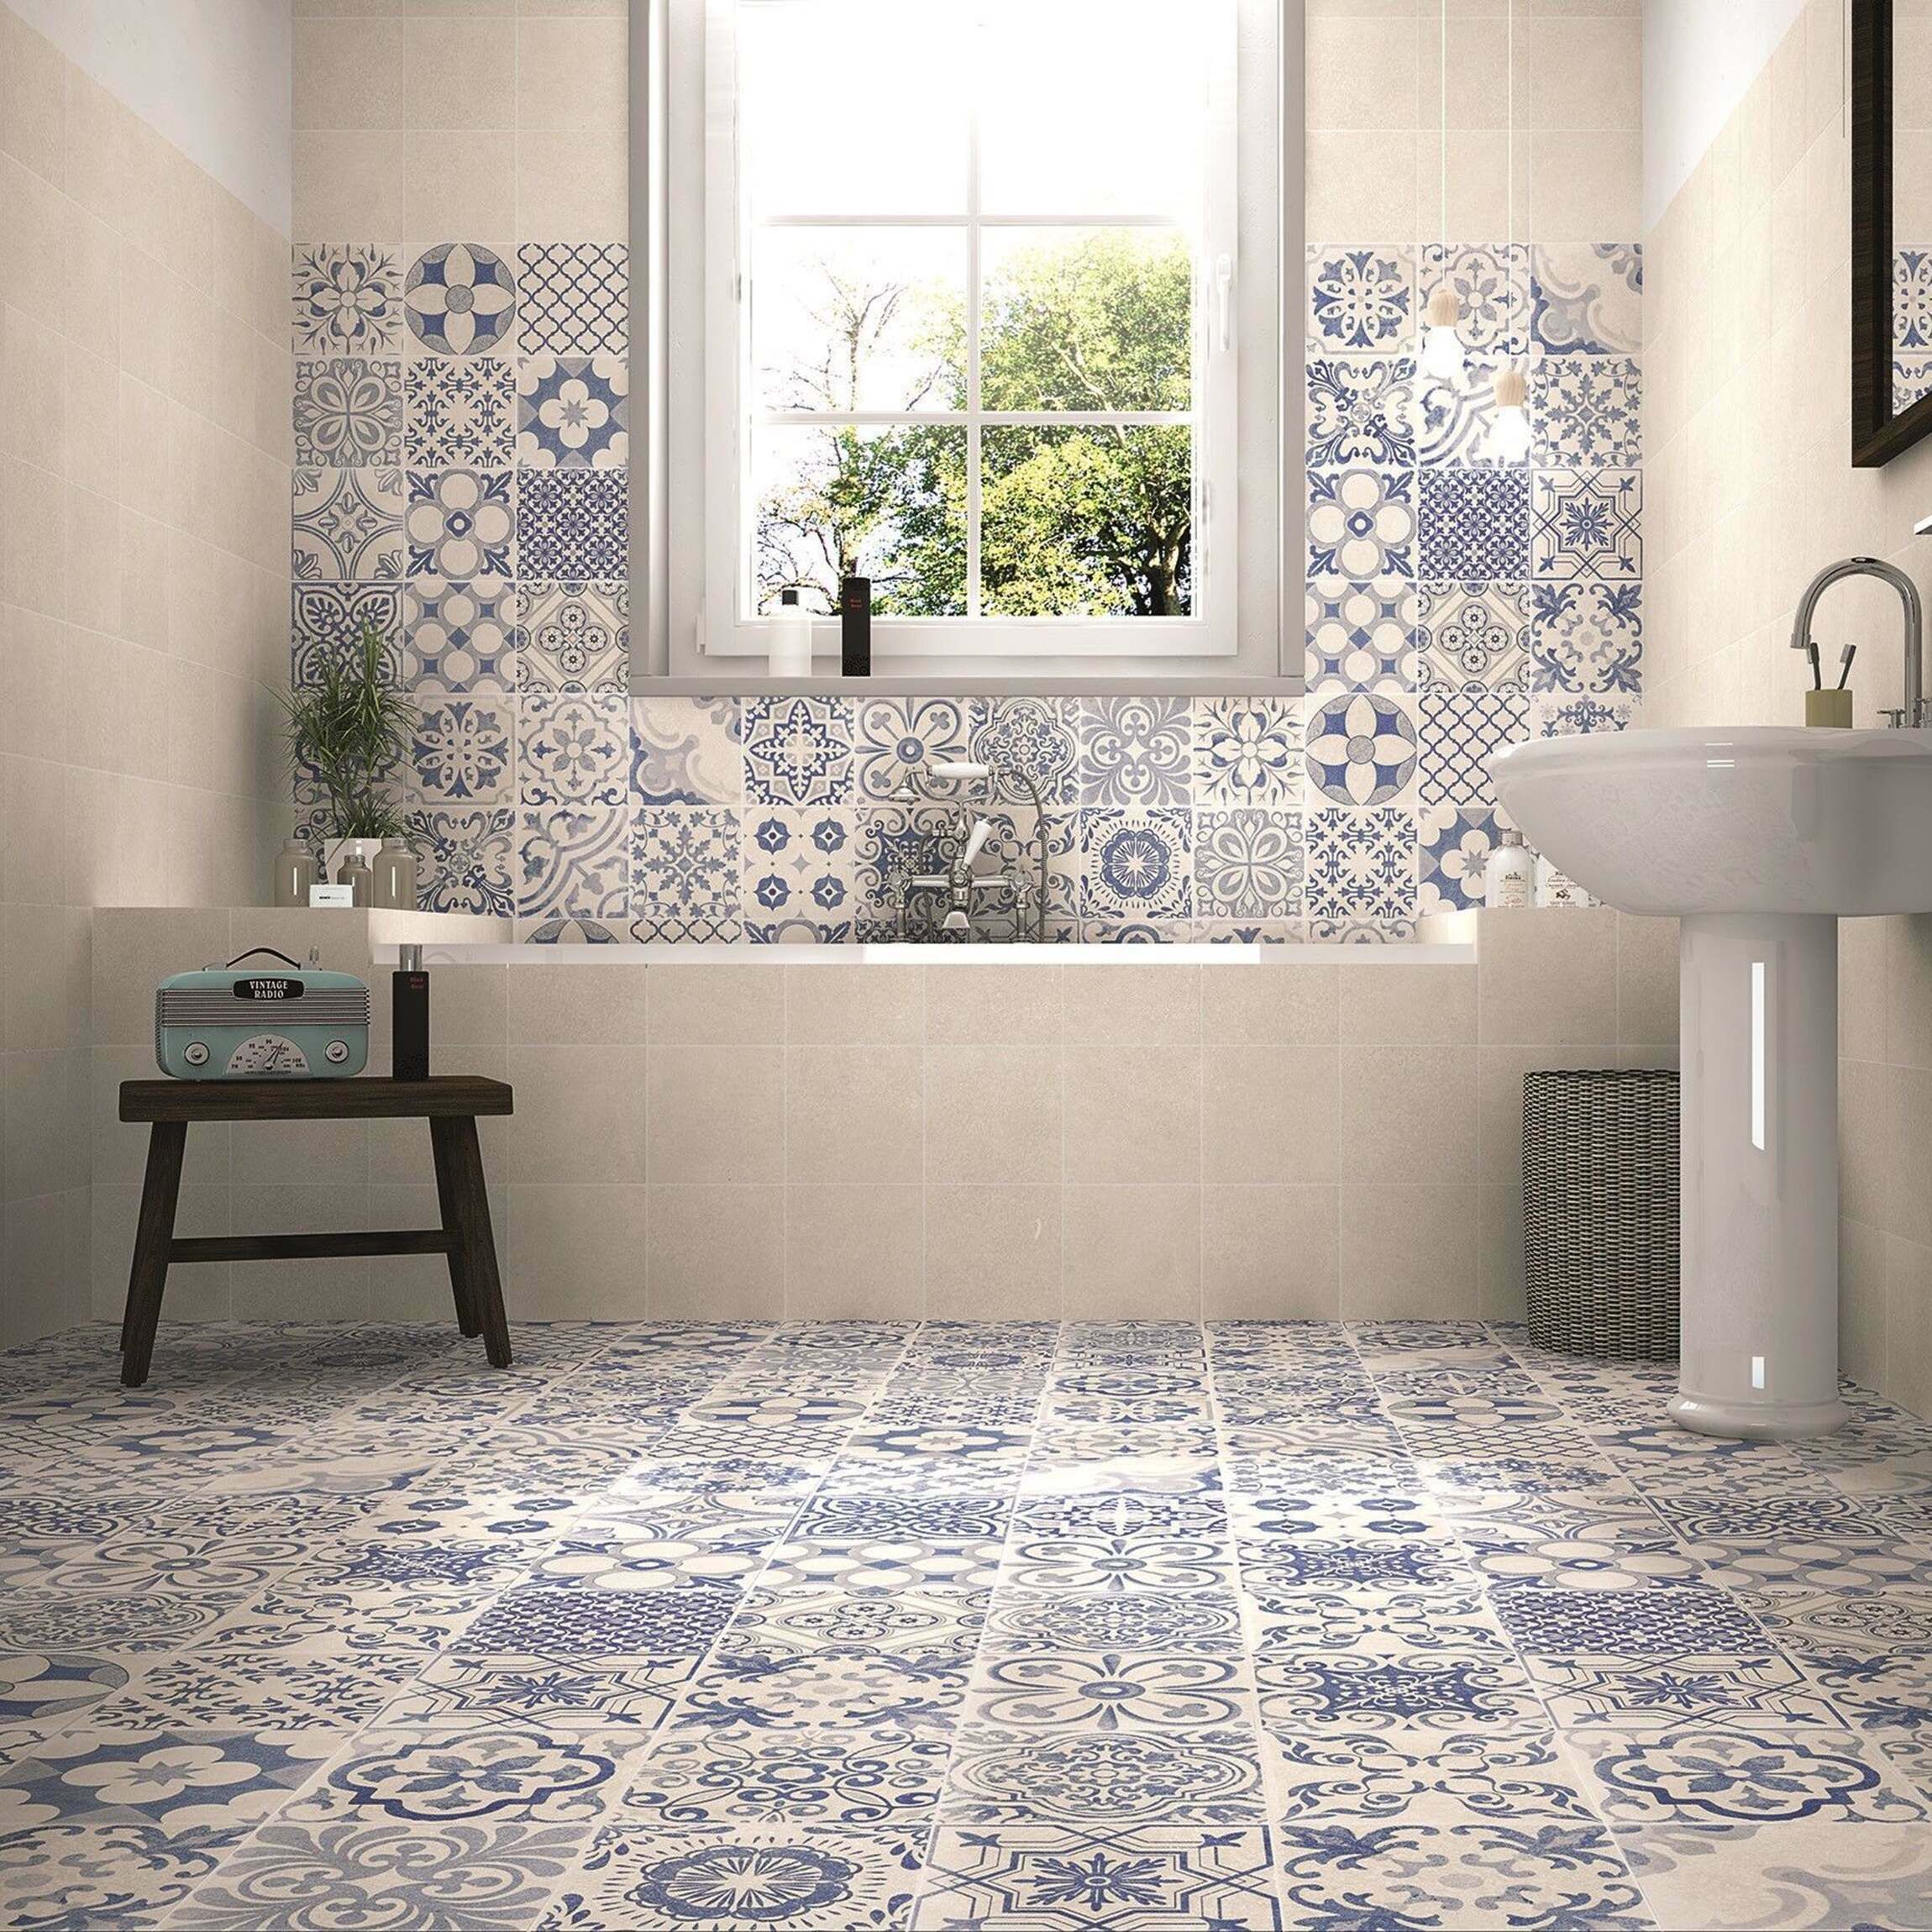 Skyros Delft Blue Wall And Floor Tile, Spanish Tile Design Vinyl Flooring